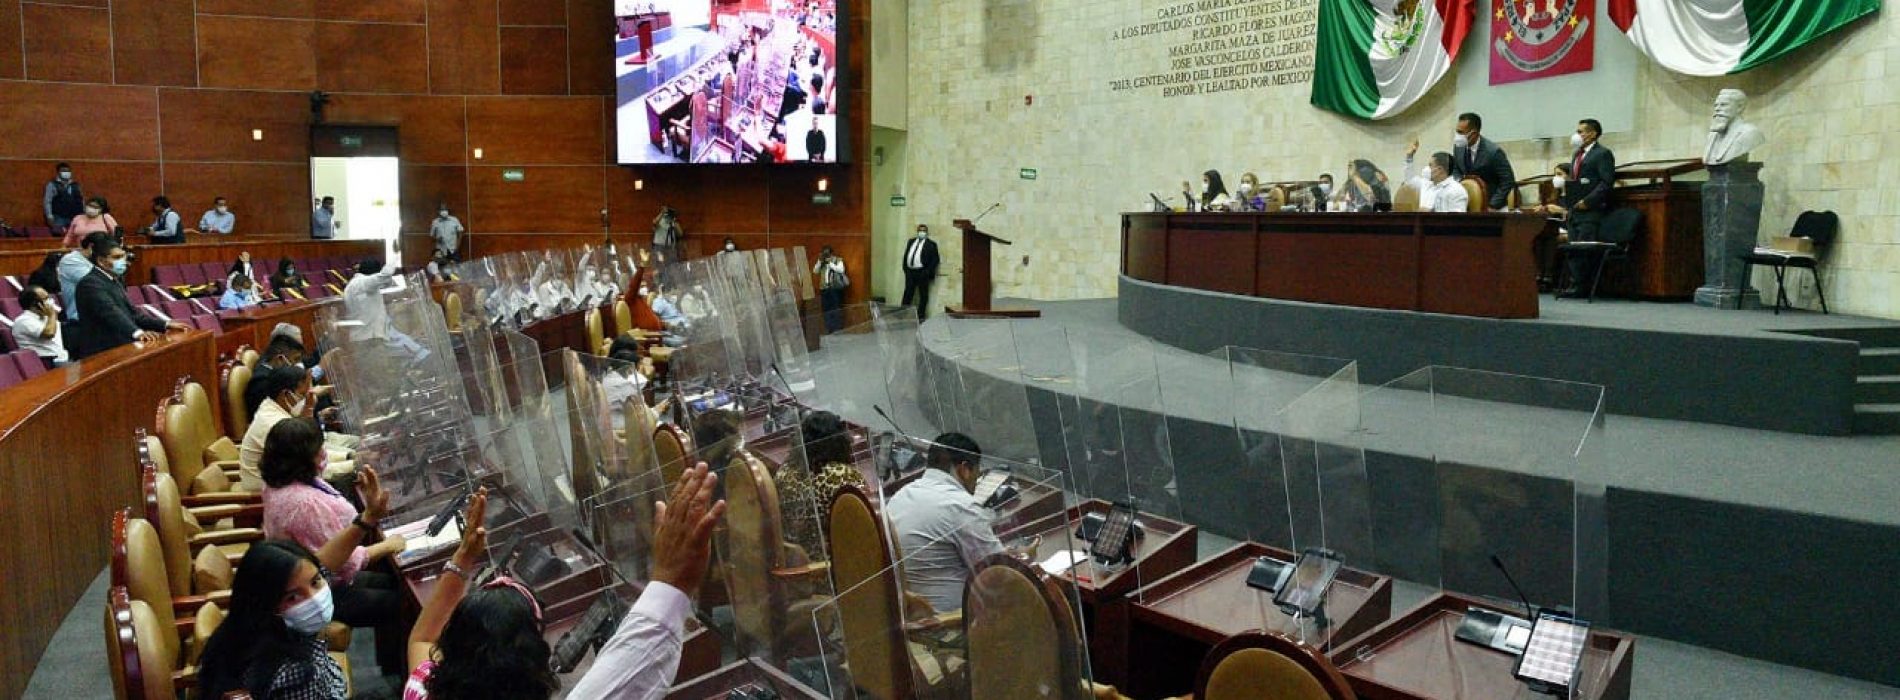 Solicitan desde el Congreso procurar justicia para las personas LGBT agredidas en Oaxaca